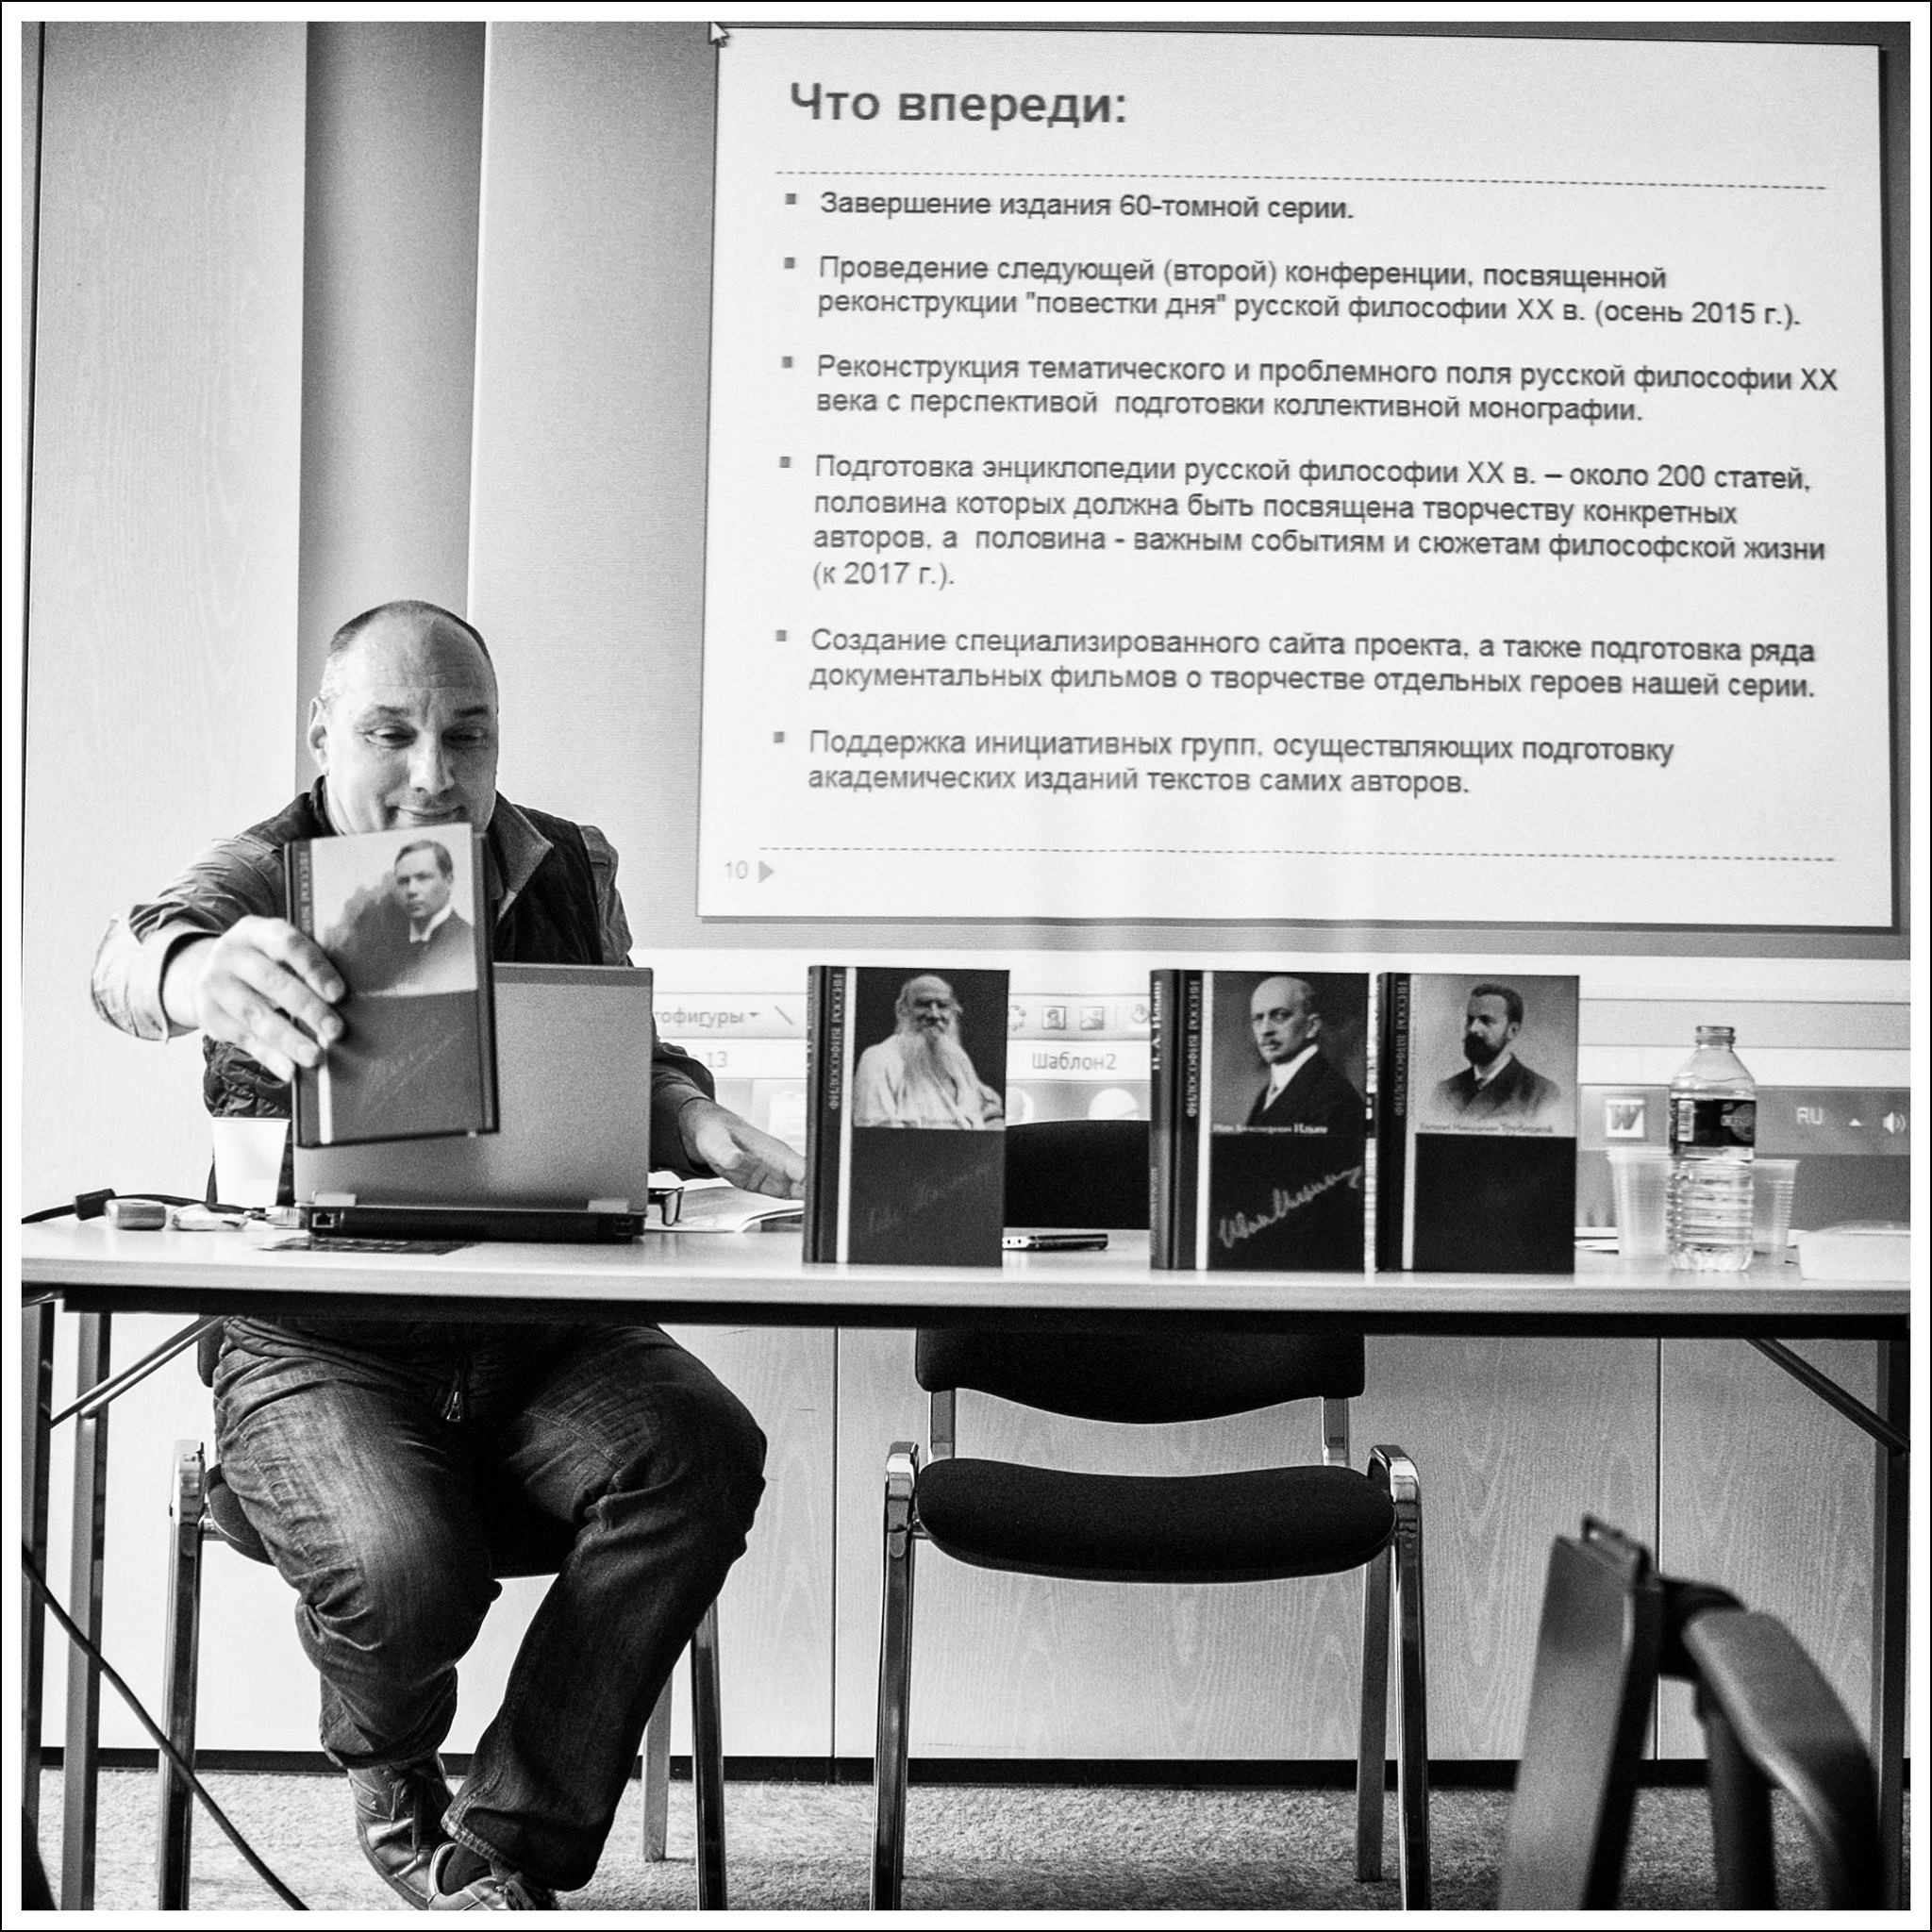 Щедровицкий на презентации серии Русская философия в Париже